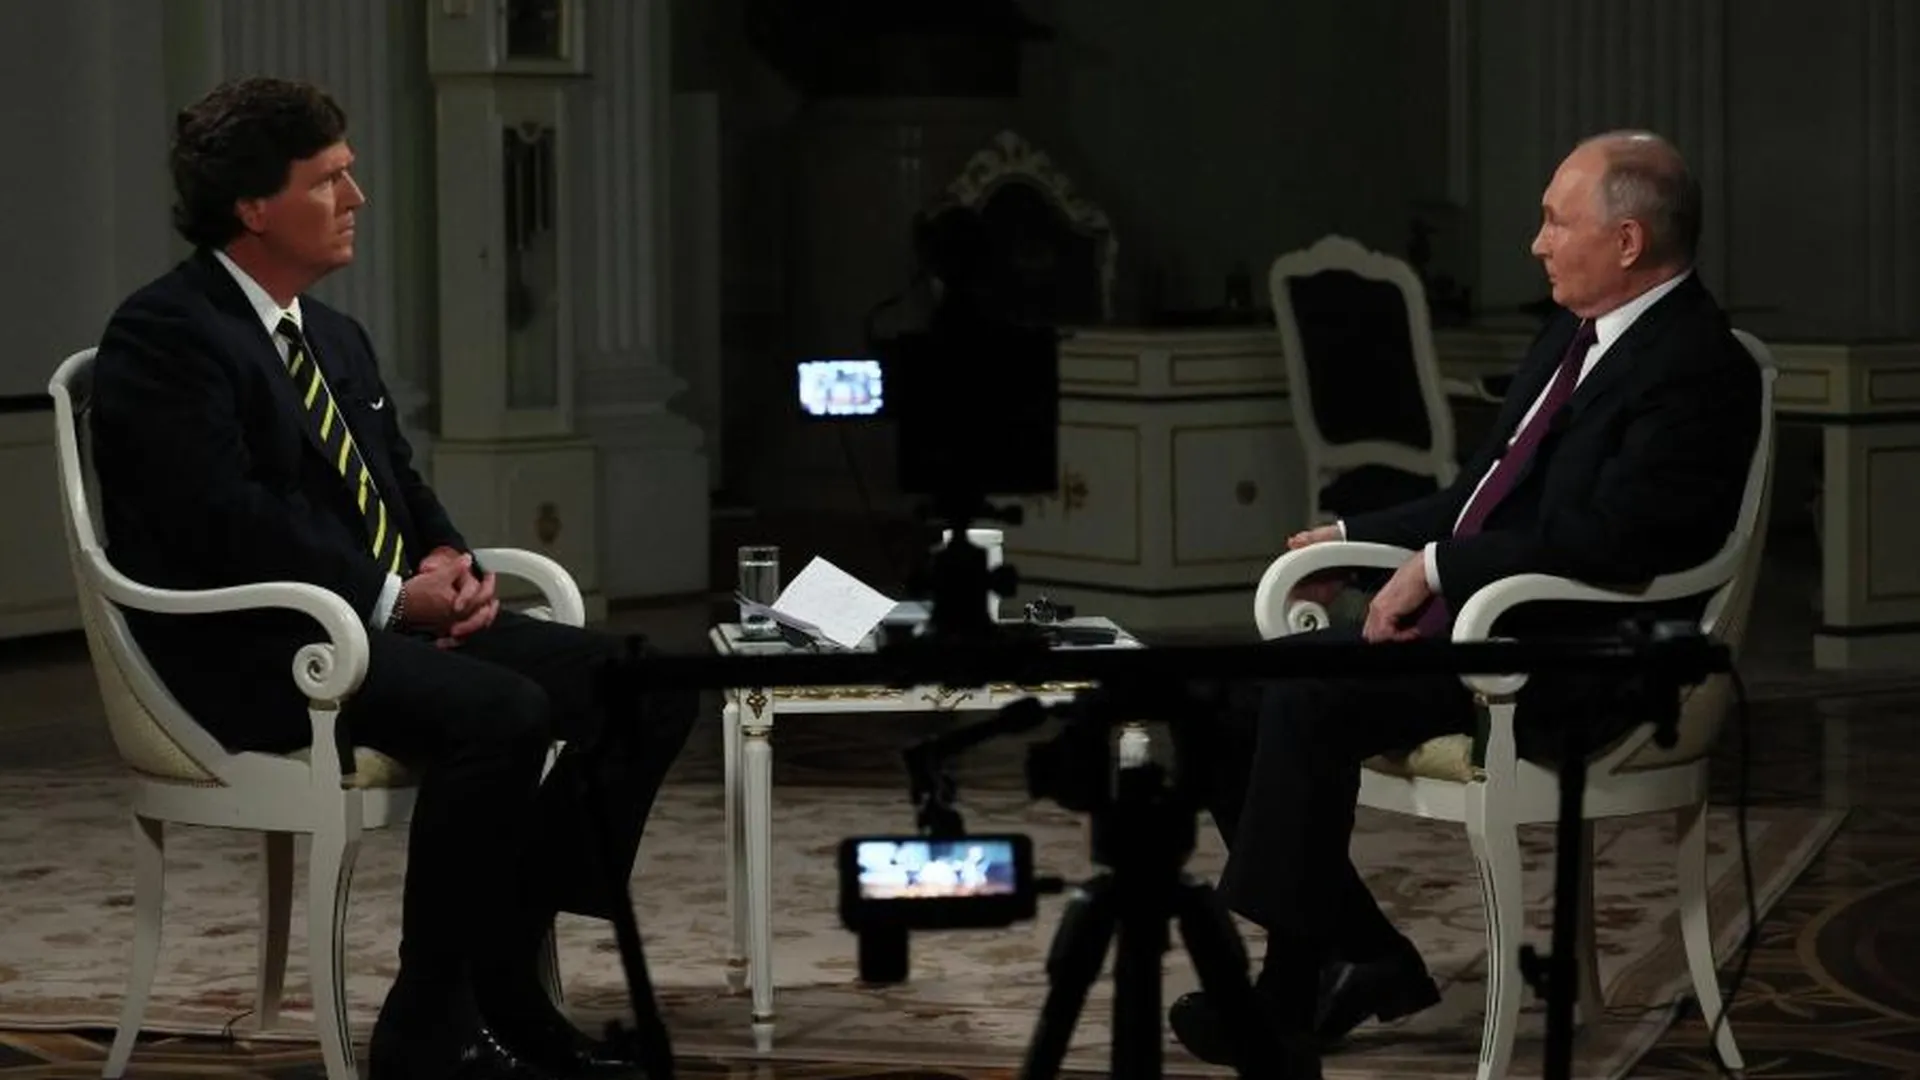 Судьба Украины и глобальные перемены в мире: что сказал Путин в интервью Такеру Карлсону